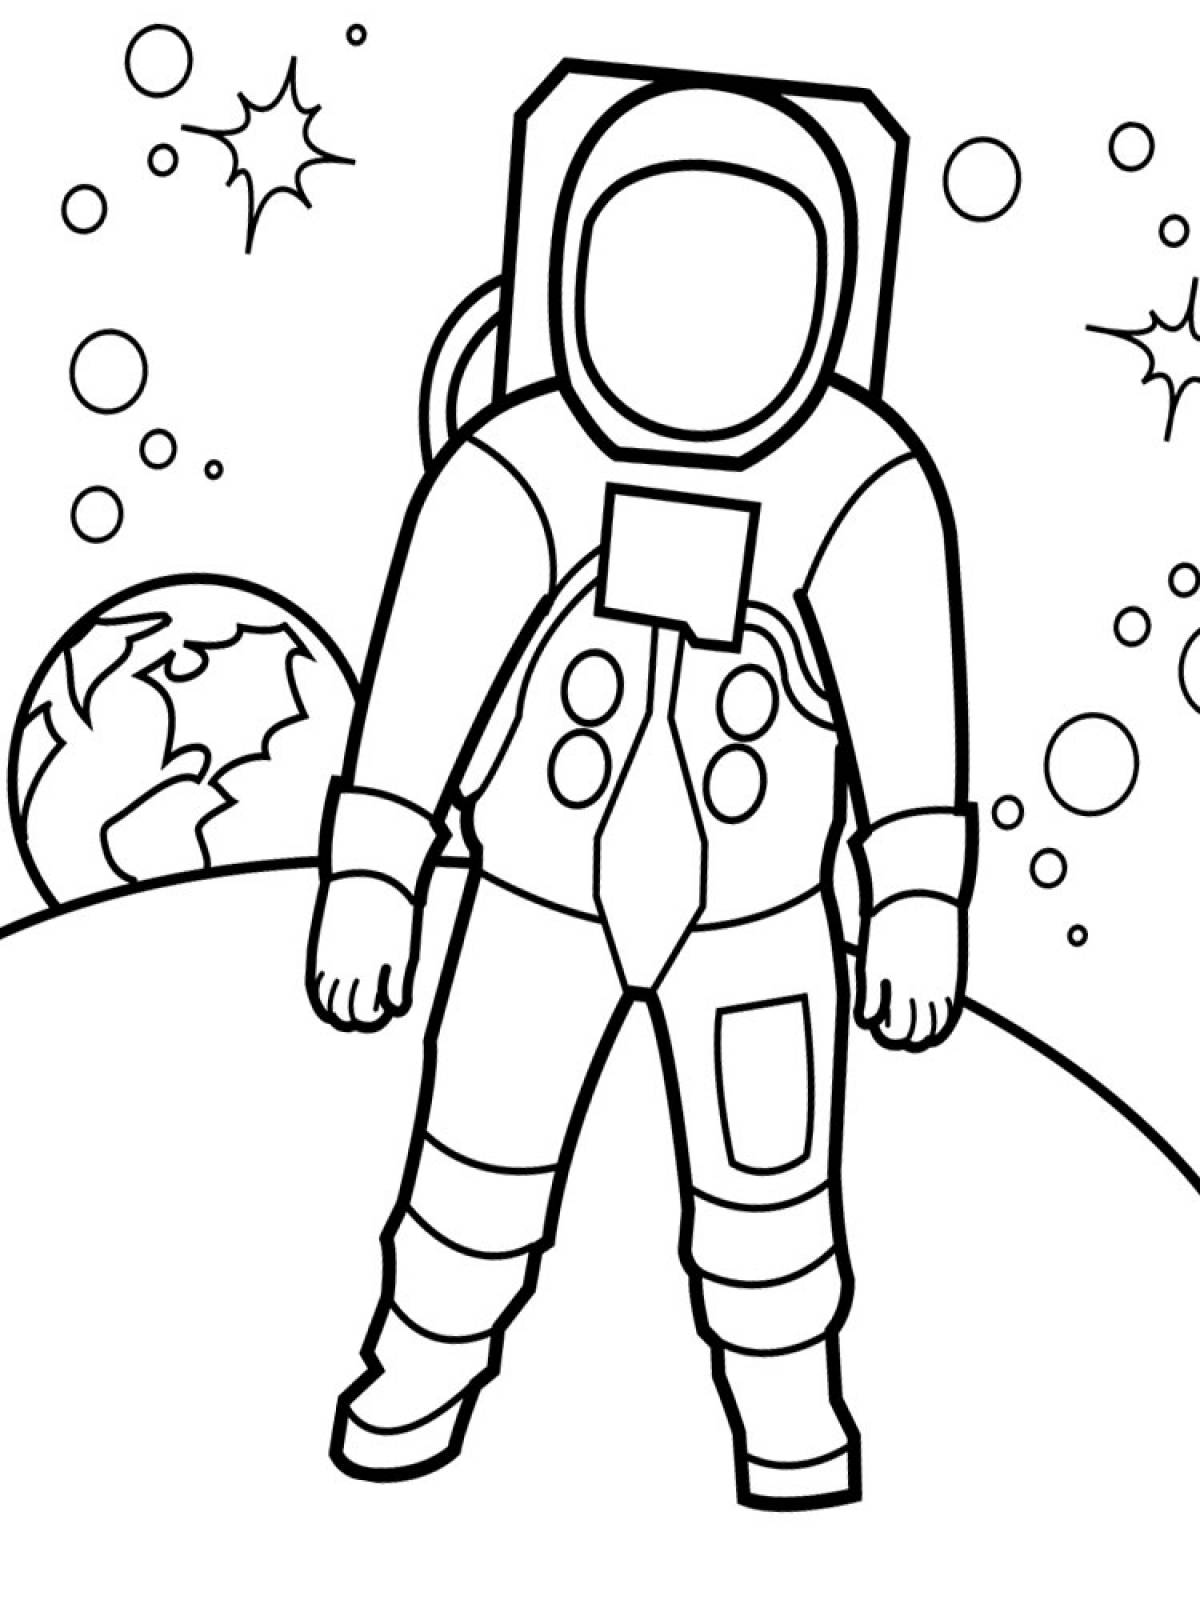 Рисунок на день космонавтики раскраска. Космонавт раскраска для детей. Космос раскраска для детей. Раскраска день космонавтики для детей. День космонавтики раскраска для малышей.